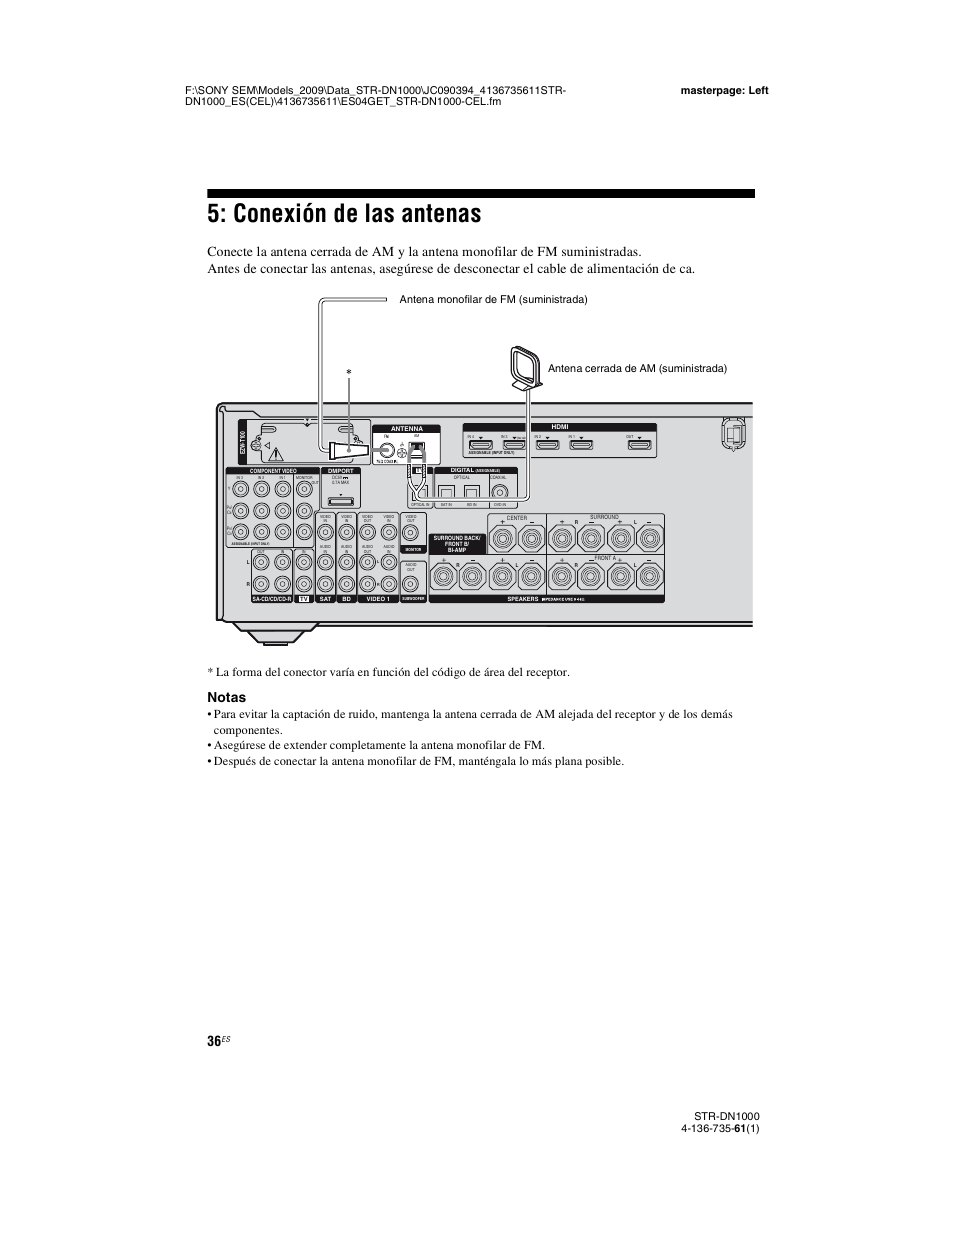 Conexión de las antenas, Notas | Sony STR-DN1000 Manual del usuario | Página 36 / 144